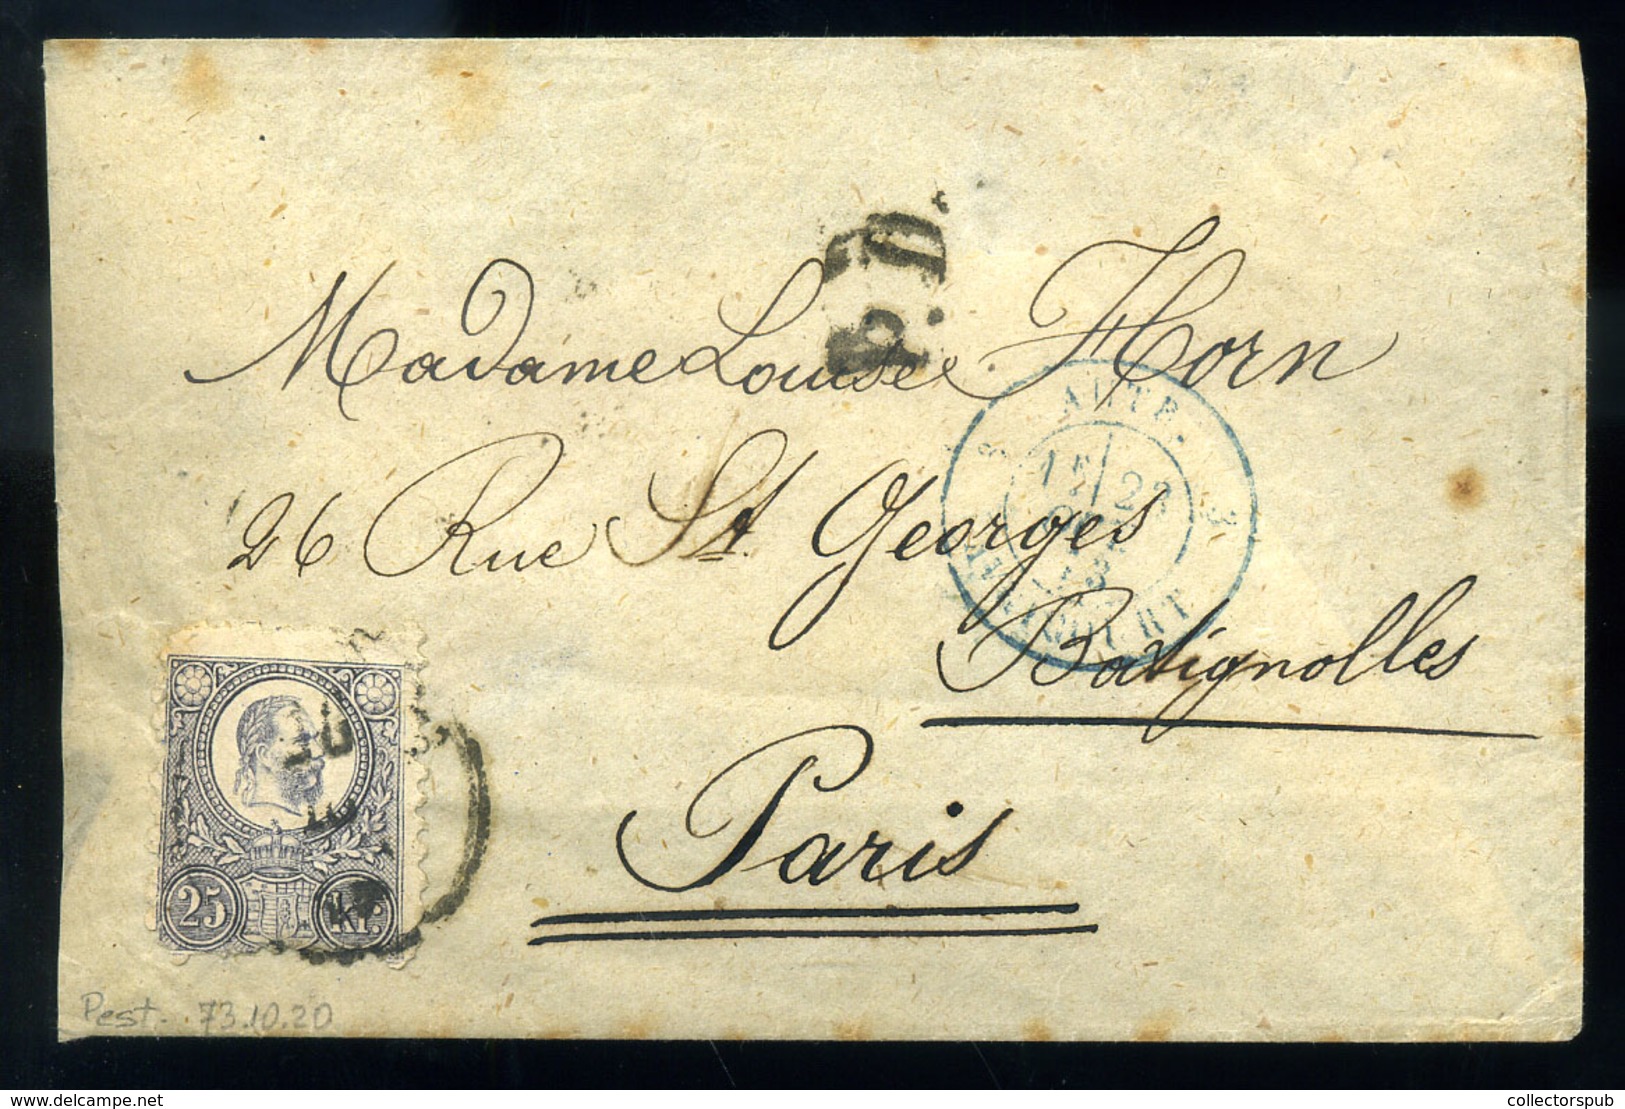 PEST 1873. Réznyomat 25Kr Ajánlott Levélen Párizsba Küldve (kis Foghiba) - Gebraucht